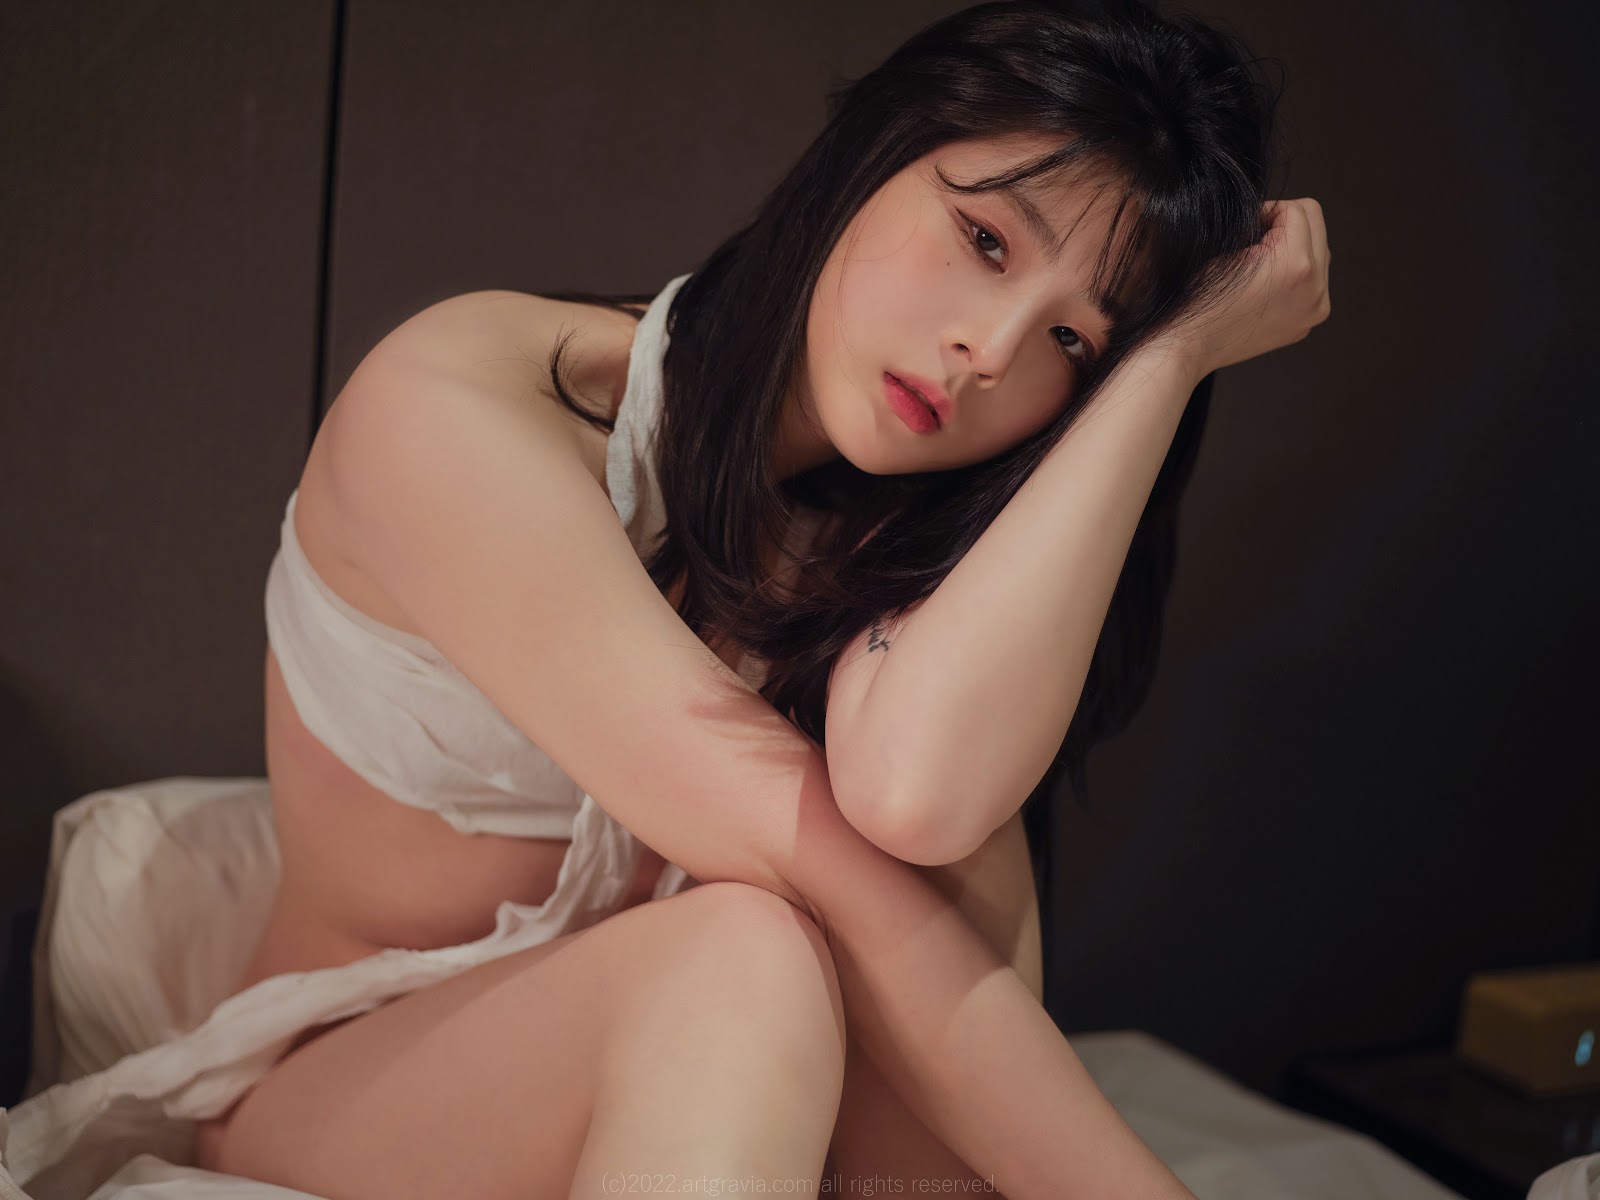 Cha joo-young topless